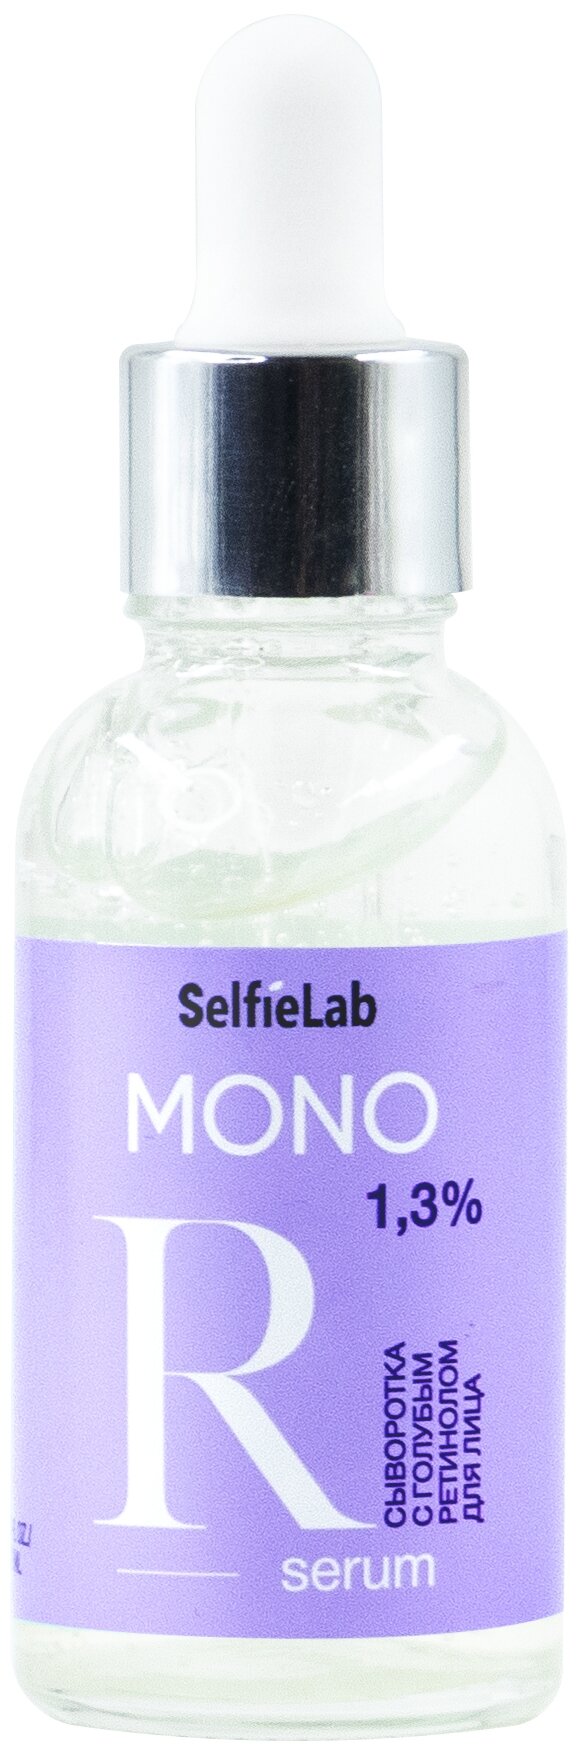 SelfieLab MONO сыворотка с голубым ретинолом 1.3%